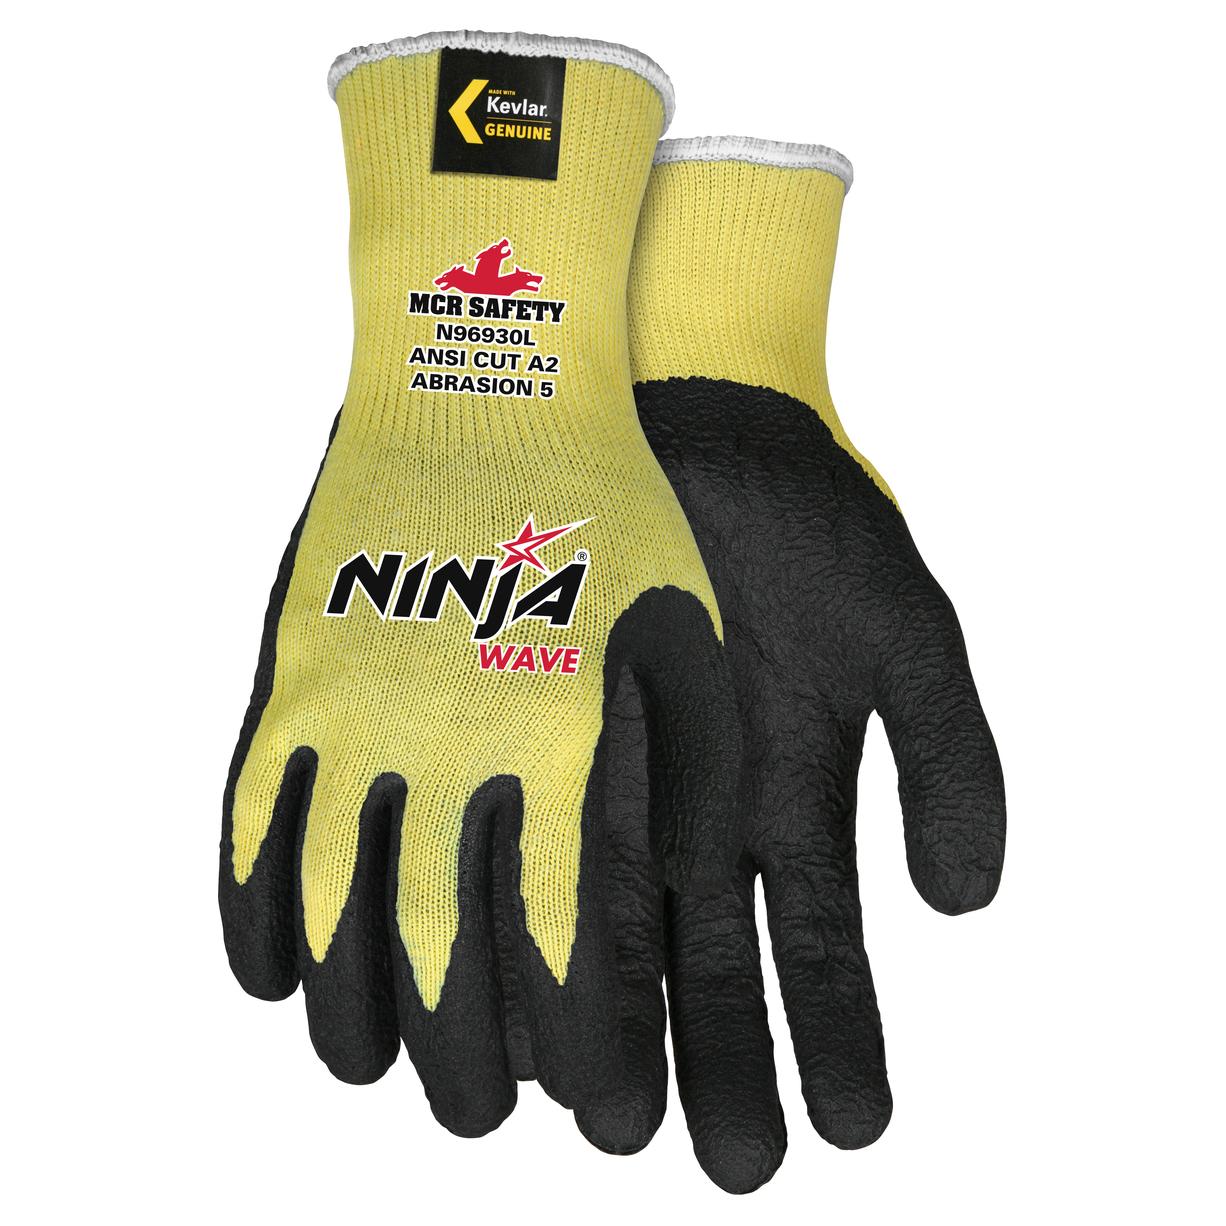 MCR Safety N96930 Ninja Wave Gloves - Nitrile Wave Coated